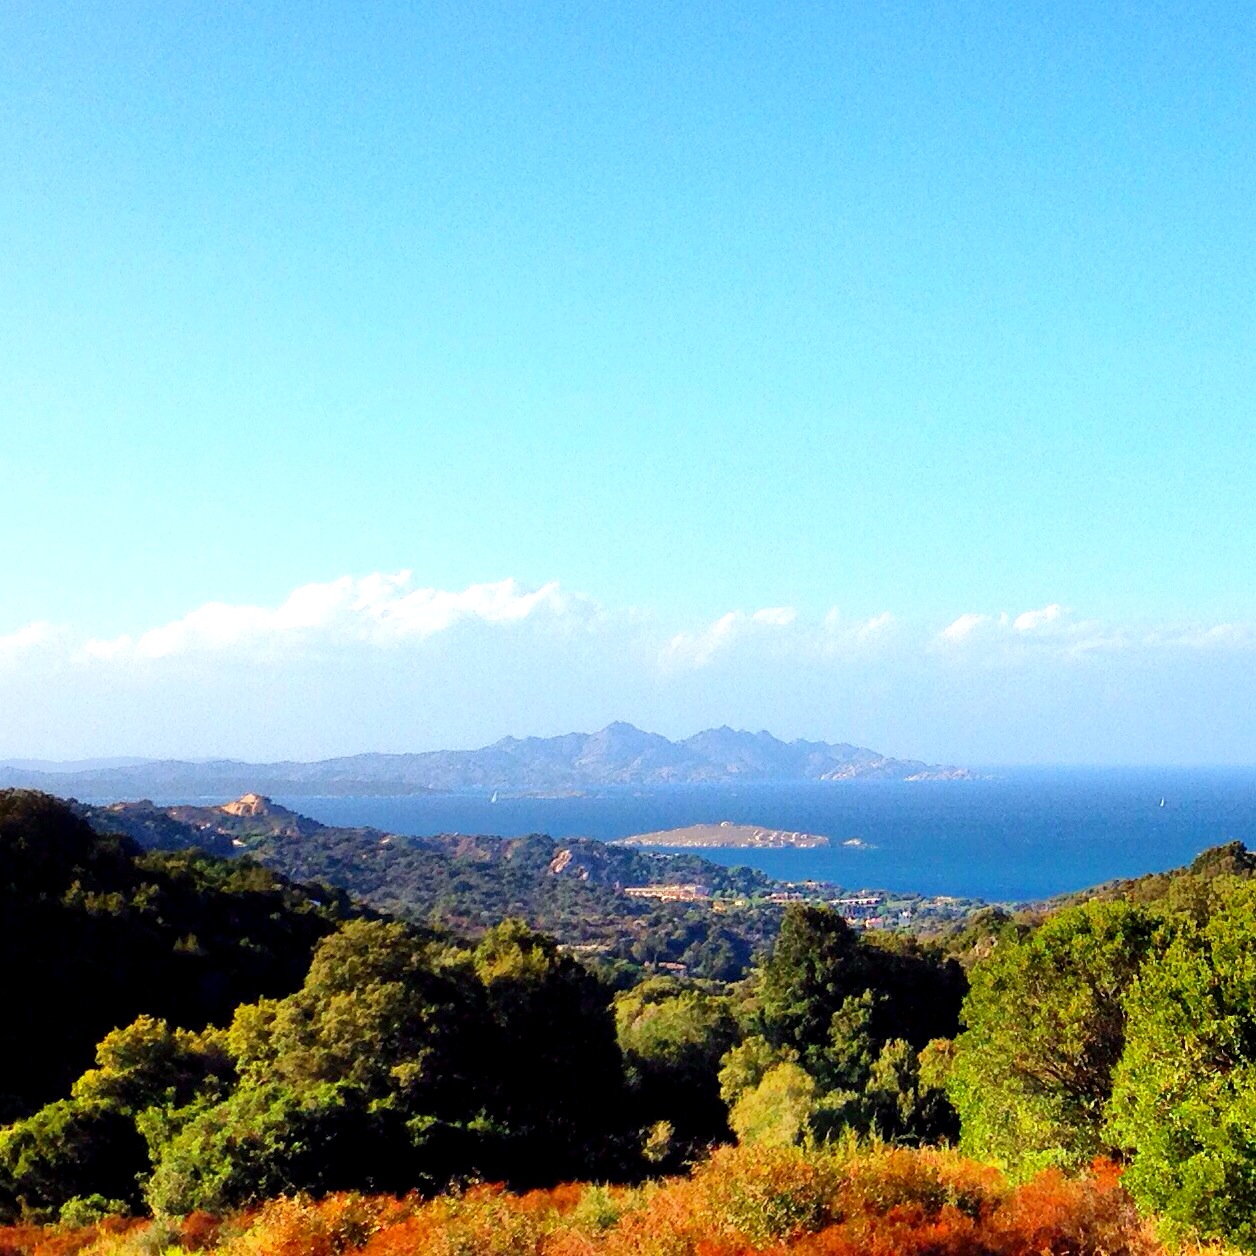 Sardinian views are stunning